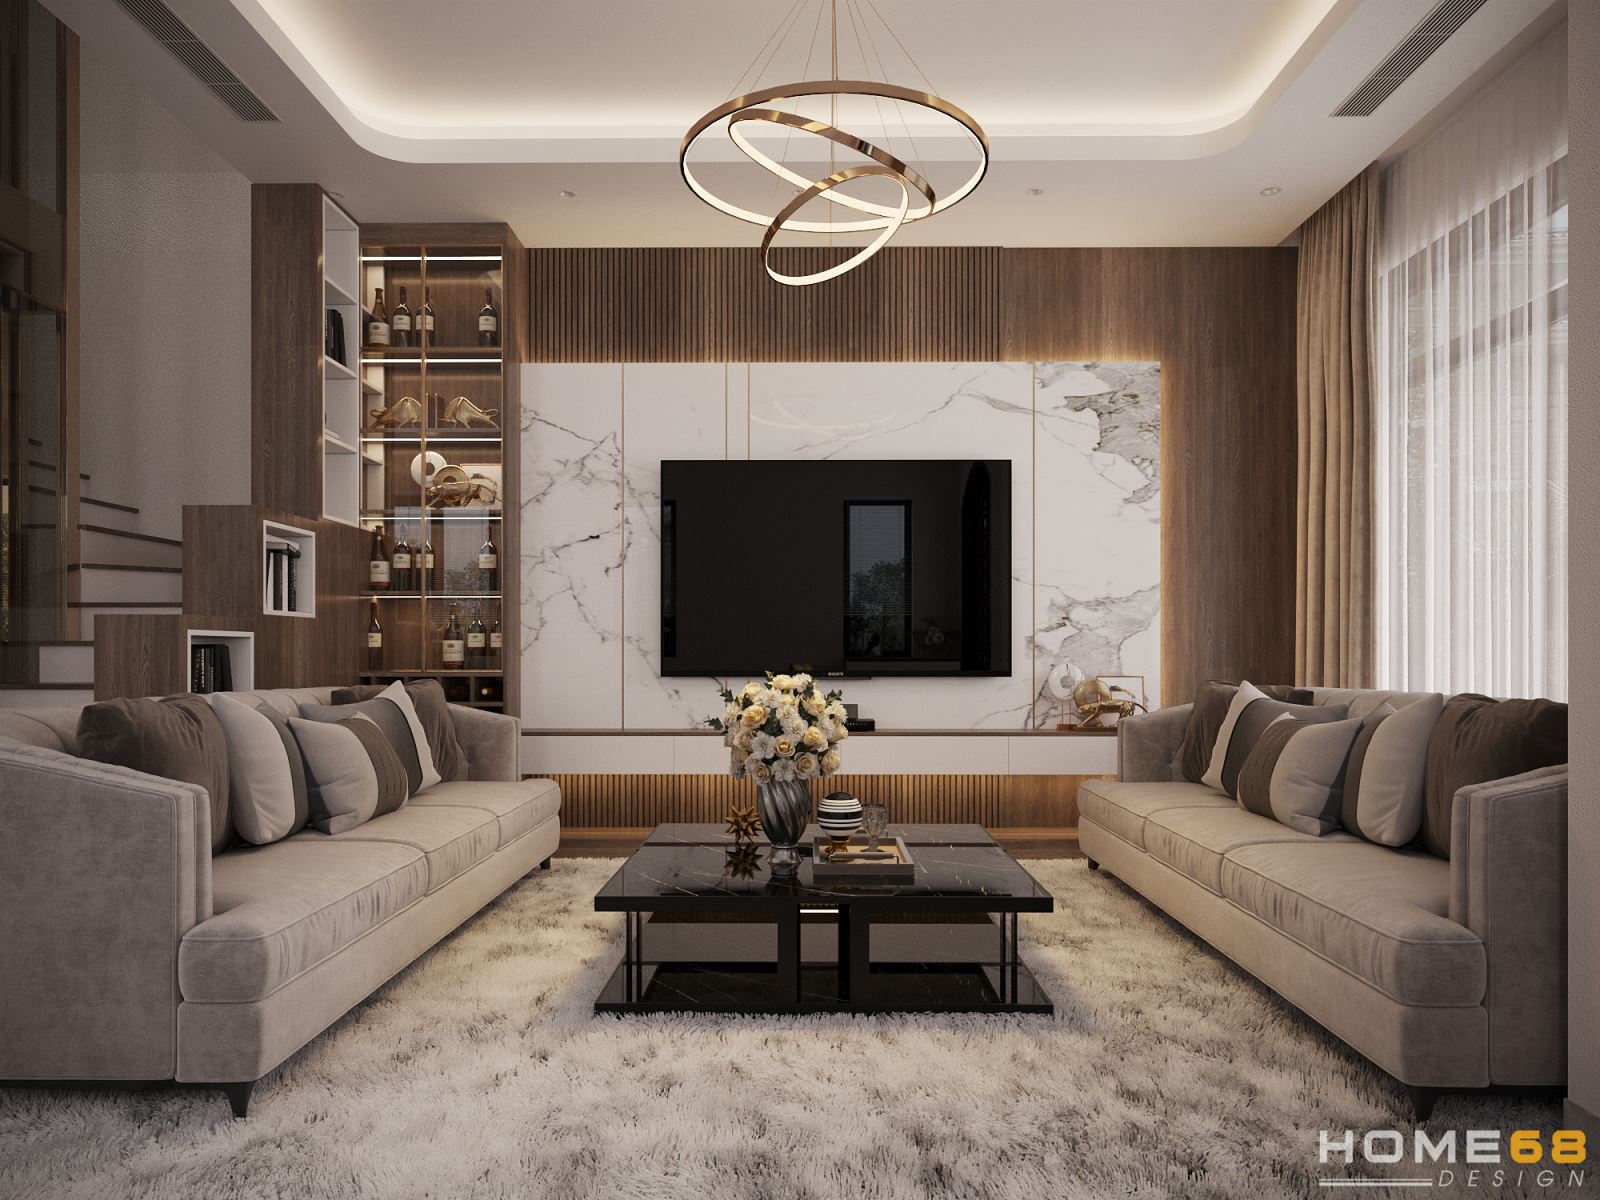 Mẫu thiết kế nội thất phòng khách hiện đại, thu hút tại HOME68